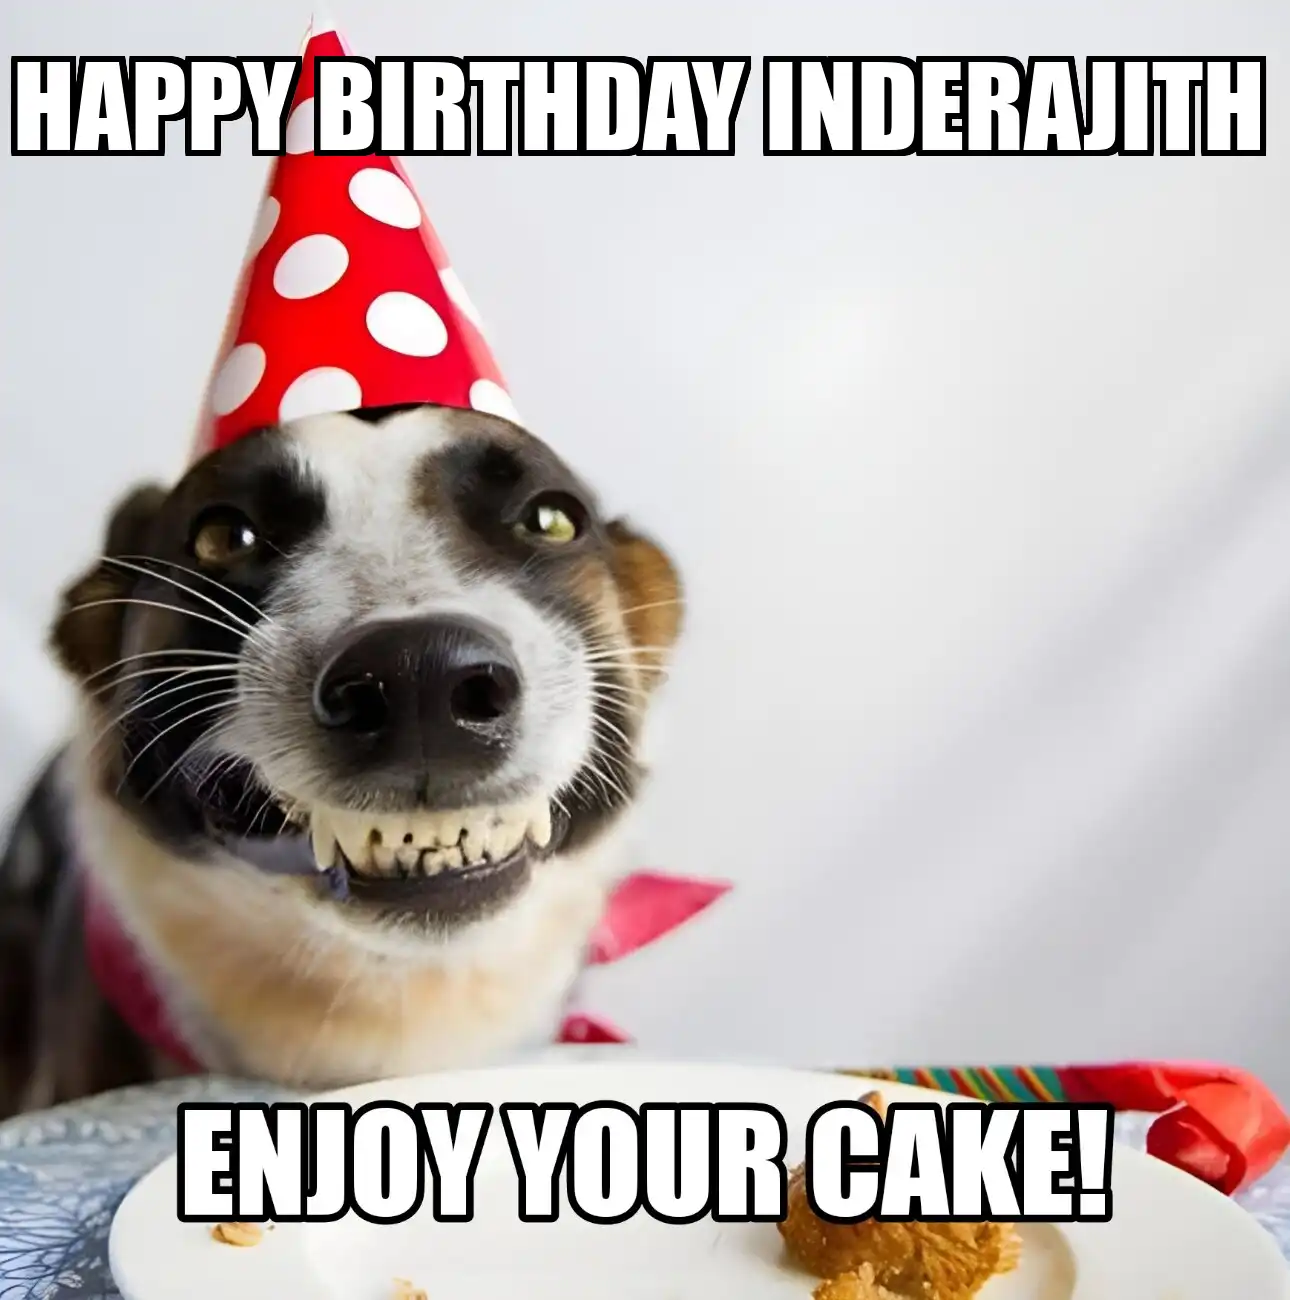 Happy Birthday Inderajith Enjoy Your Cake Dog Meme